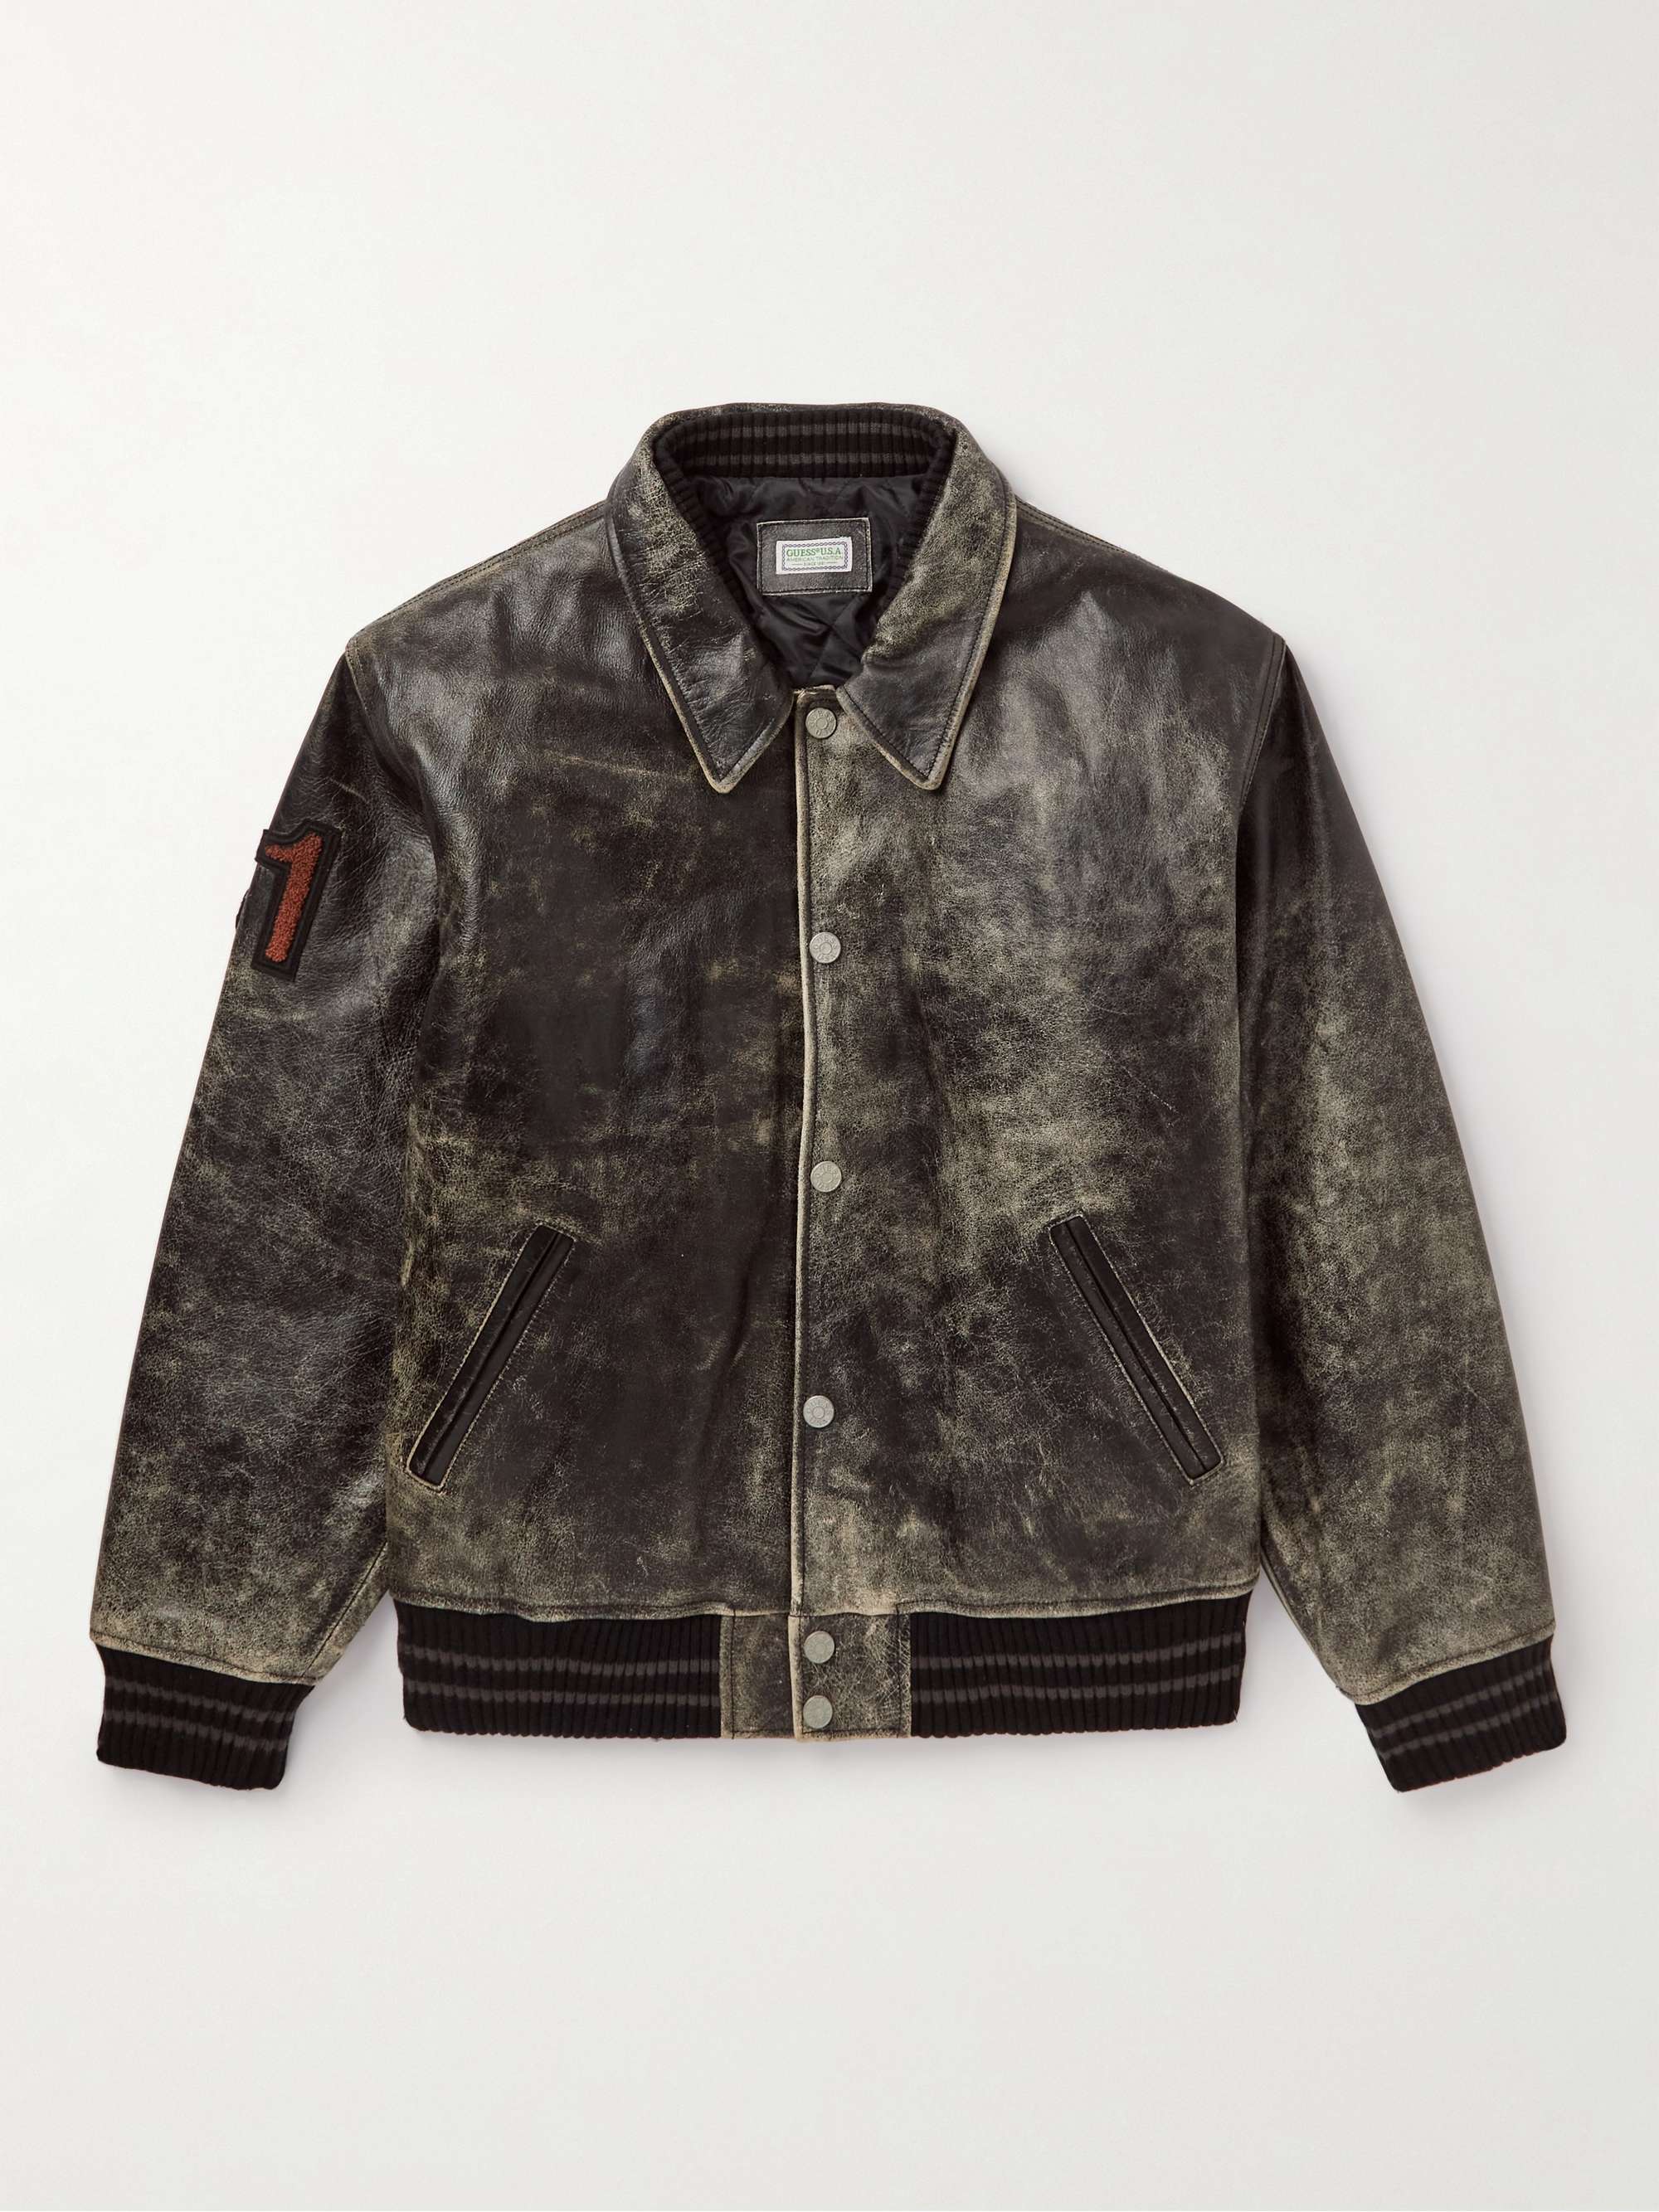 GUESS USA Appliquéd Distressed Leather Varsity Jacket for Men | MR PORTER